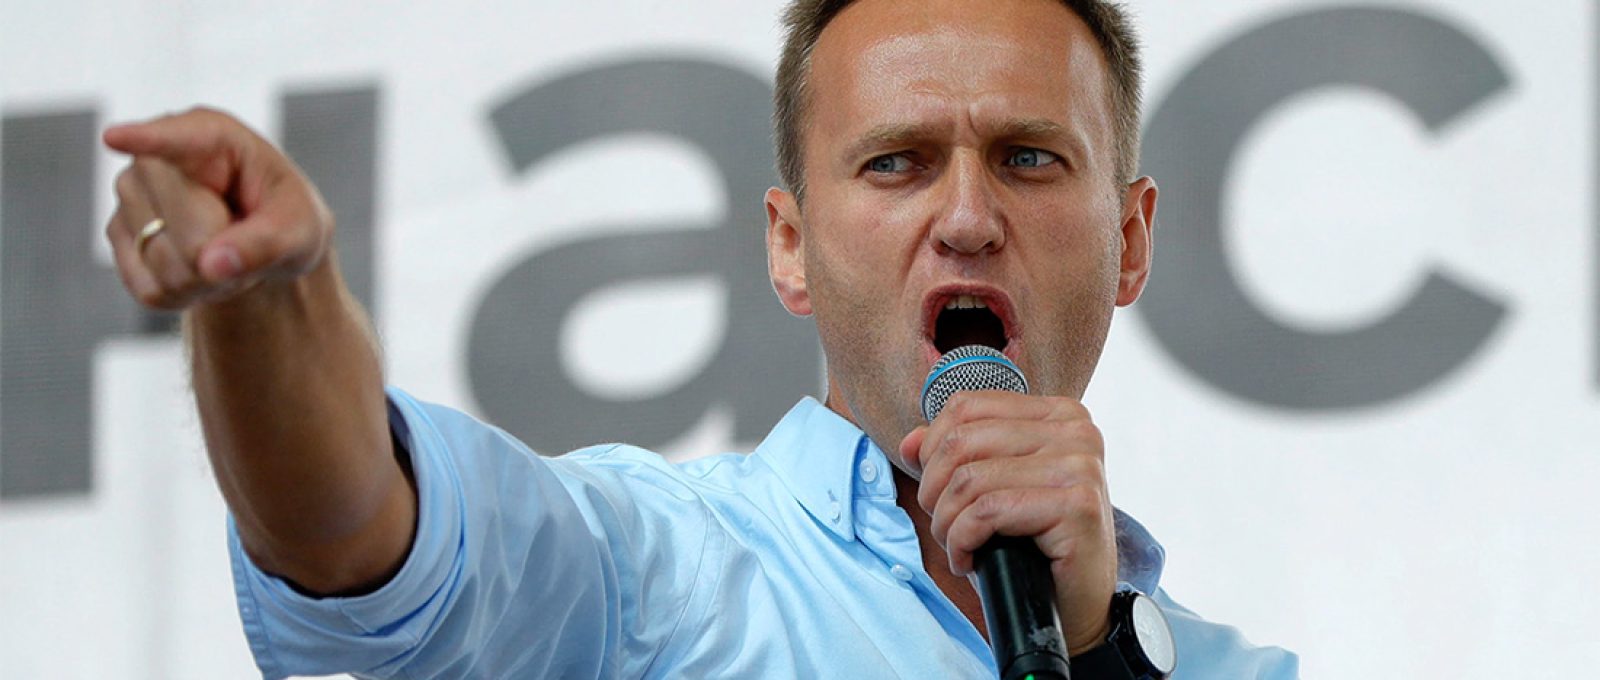 Aleksey Navalny discursa durante um protesto em Moscou, 20 de julho de 2019 (Pavel Golovkin/AP Images).